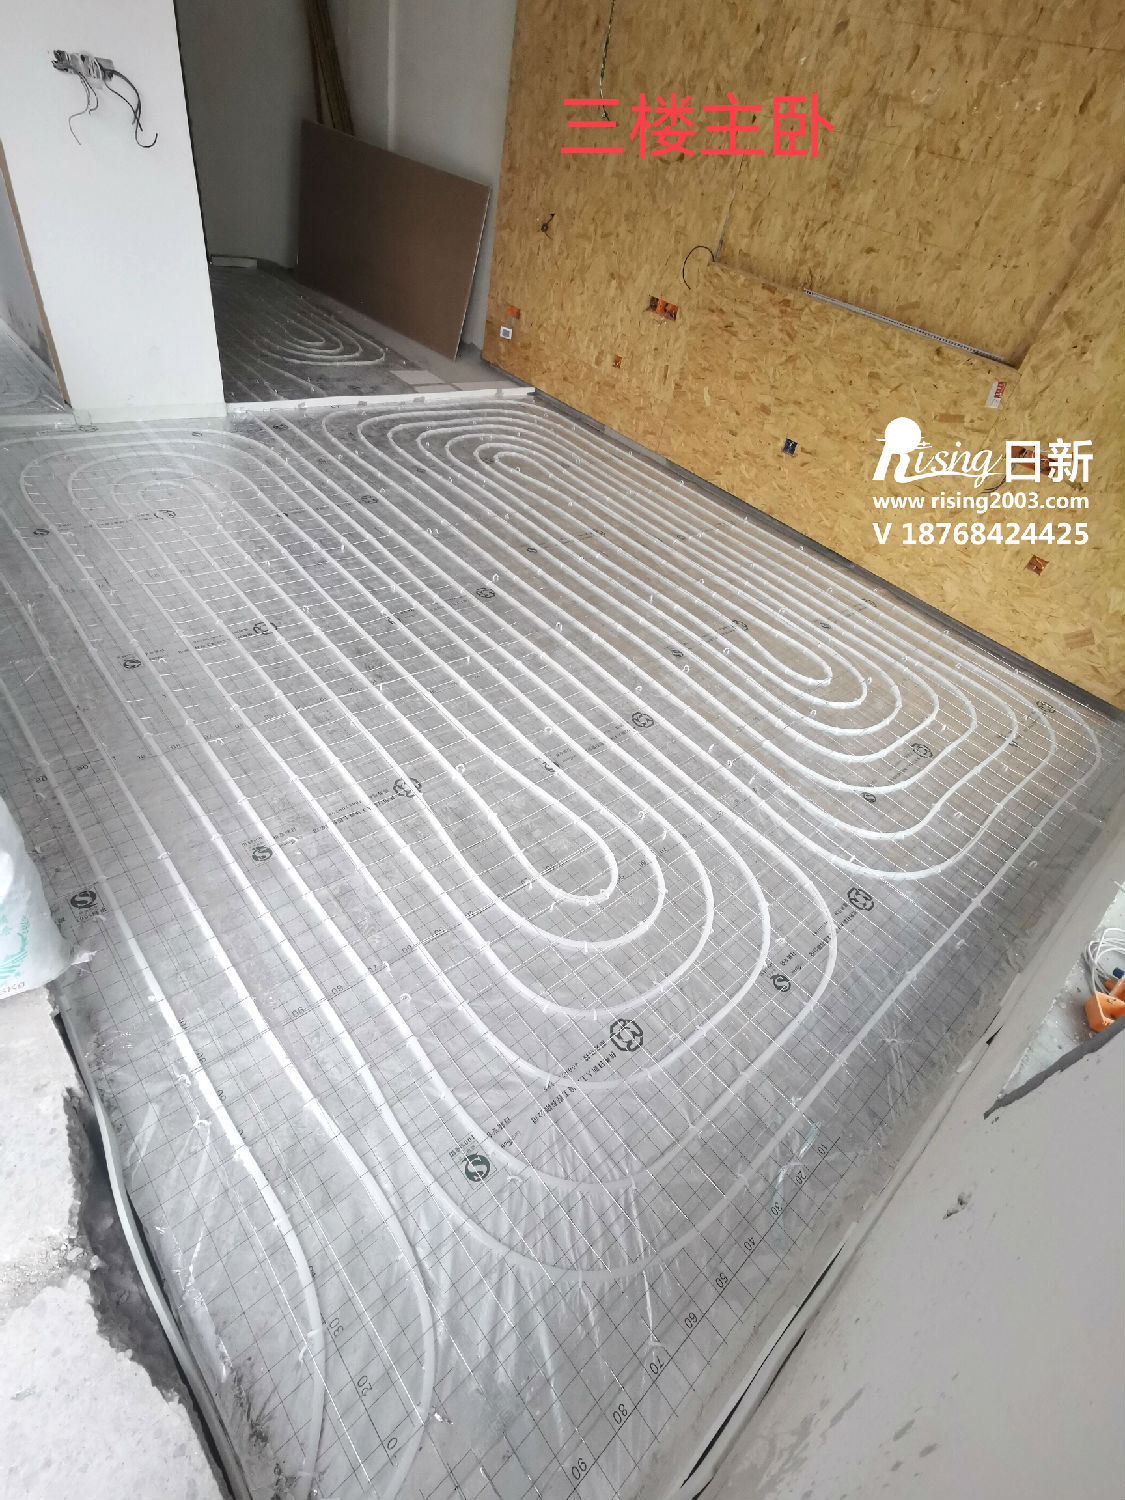 印江南风冷热泵系统项目地暖安装阶段【日新环境】